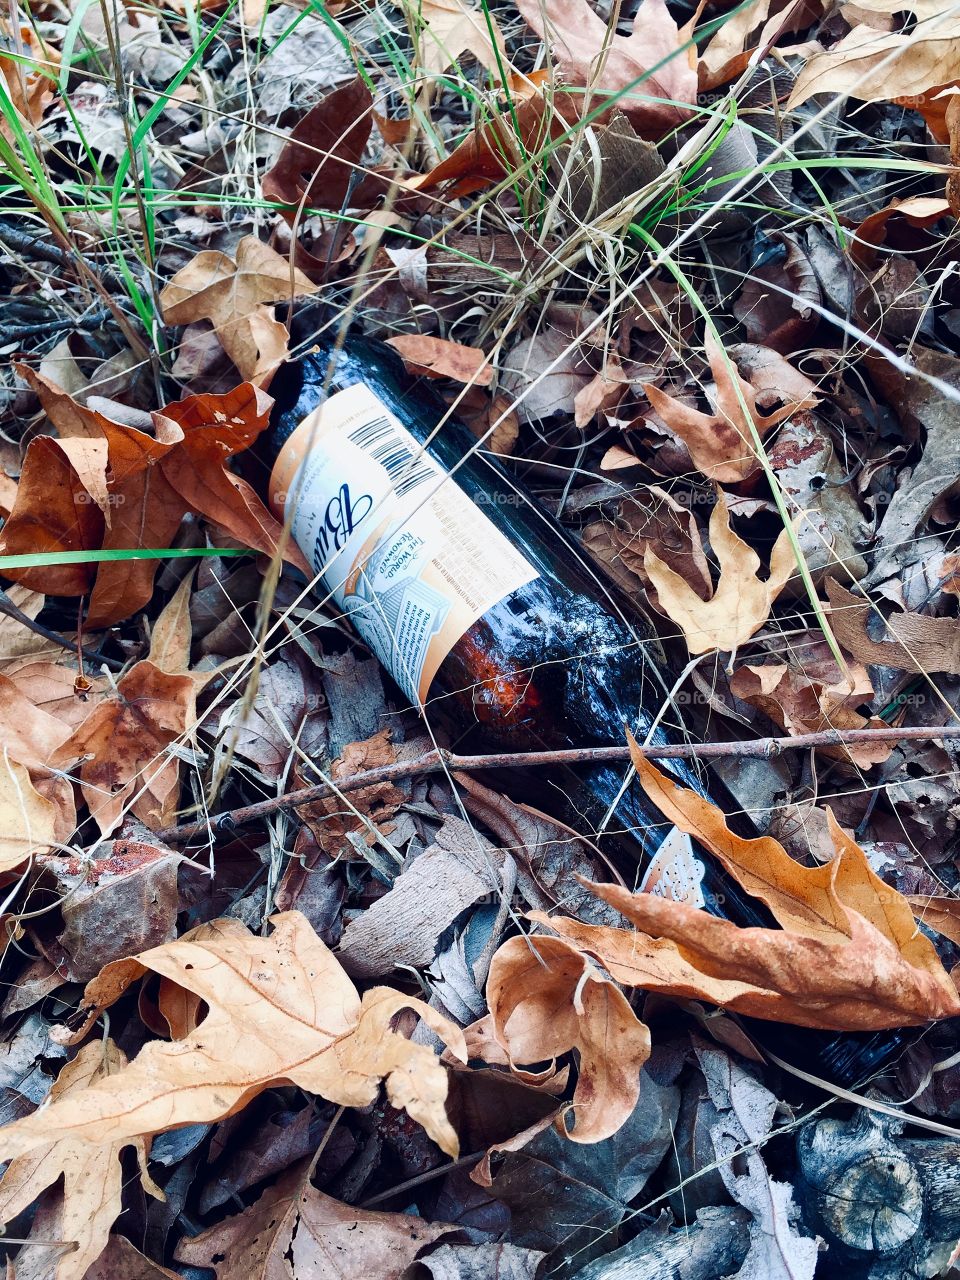 Littered Budweiser